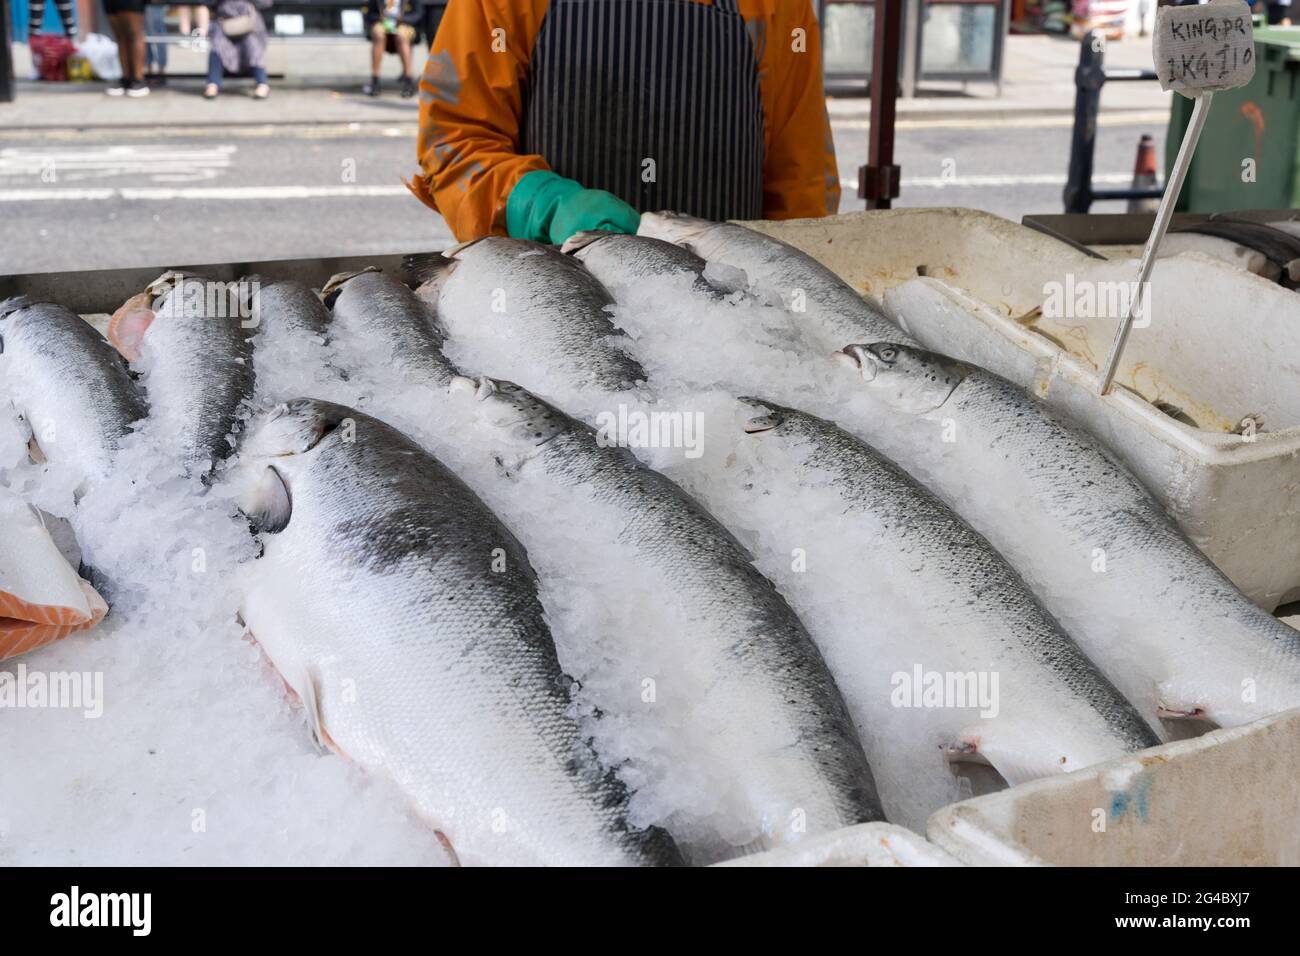 Esposizione di salmone intero su ghiaccio per la vendita al market stall, monger di pesce, Londra greenwich, Inghilterra Foto Stock